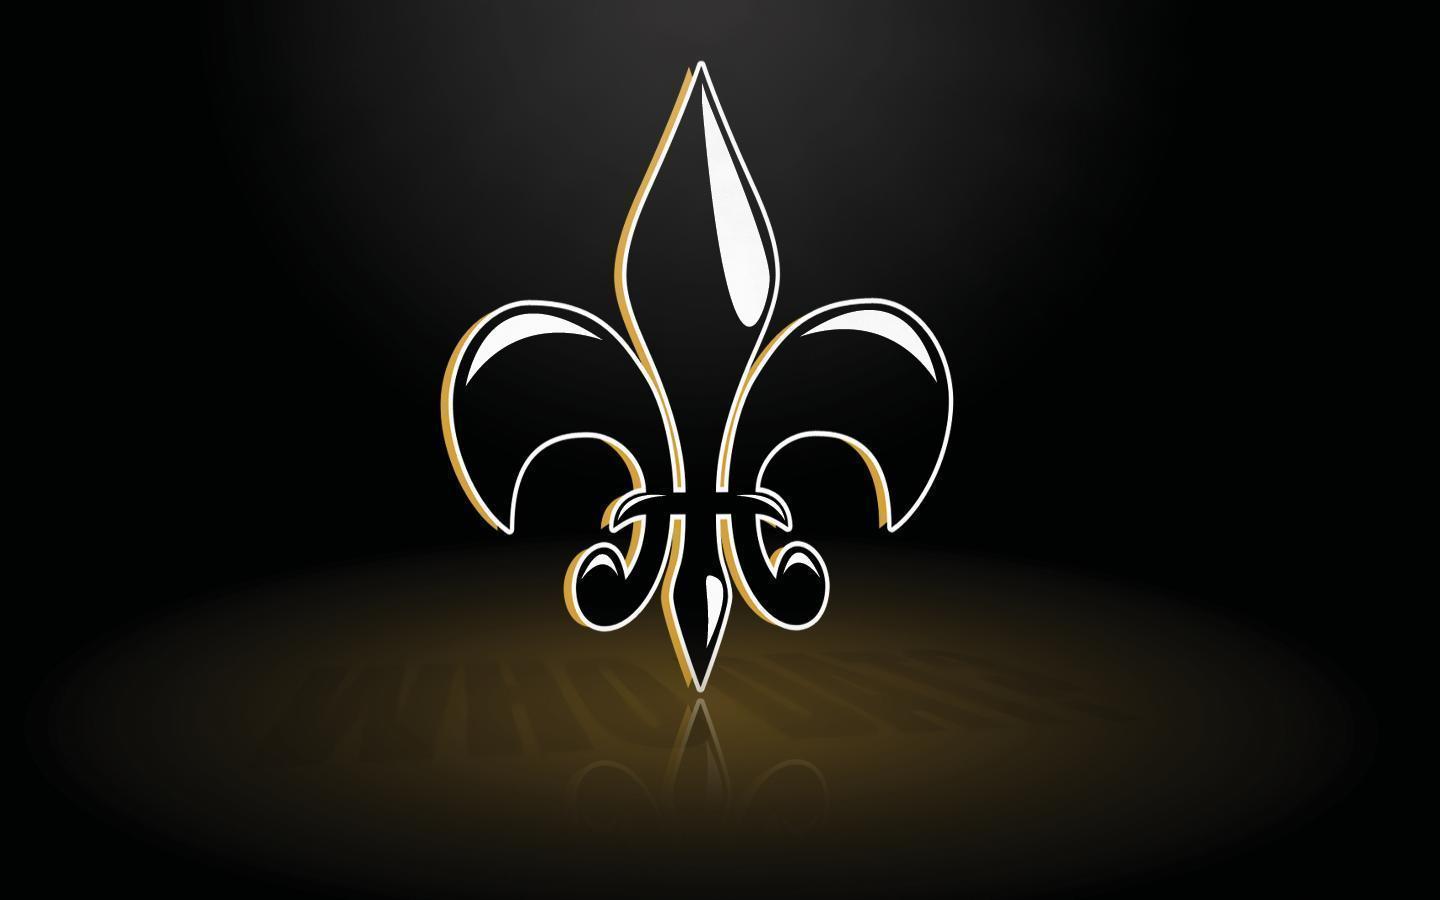 New Orleans Saints backgrounds